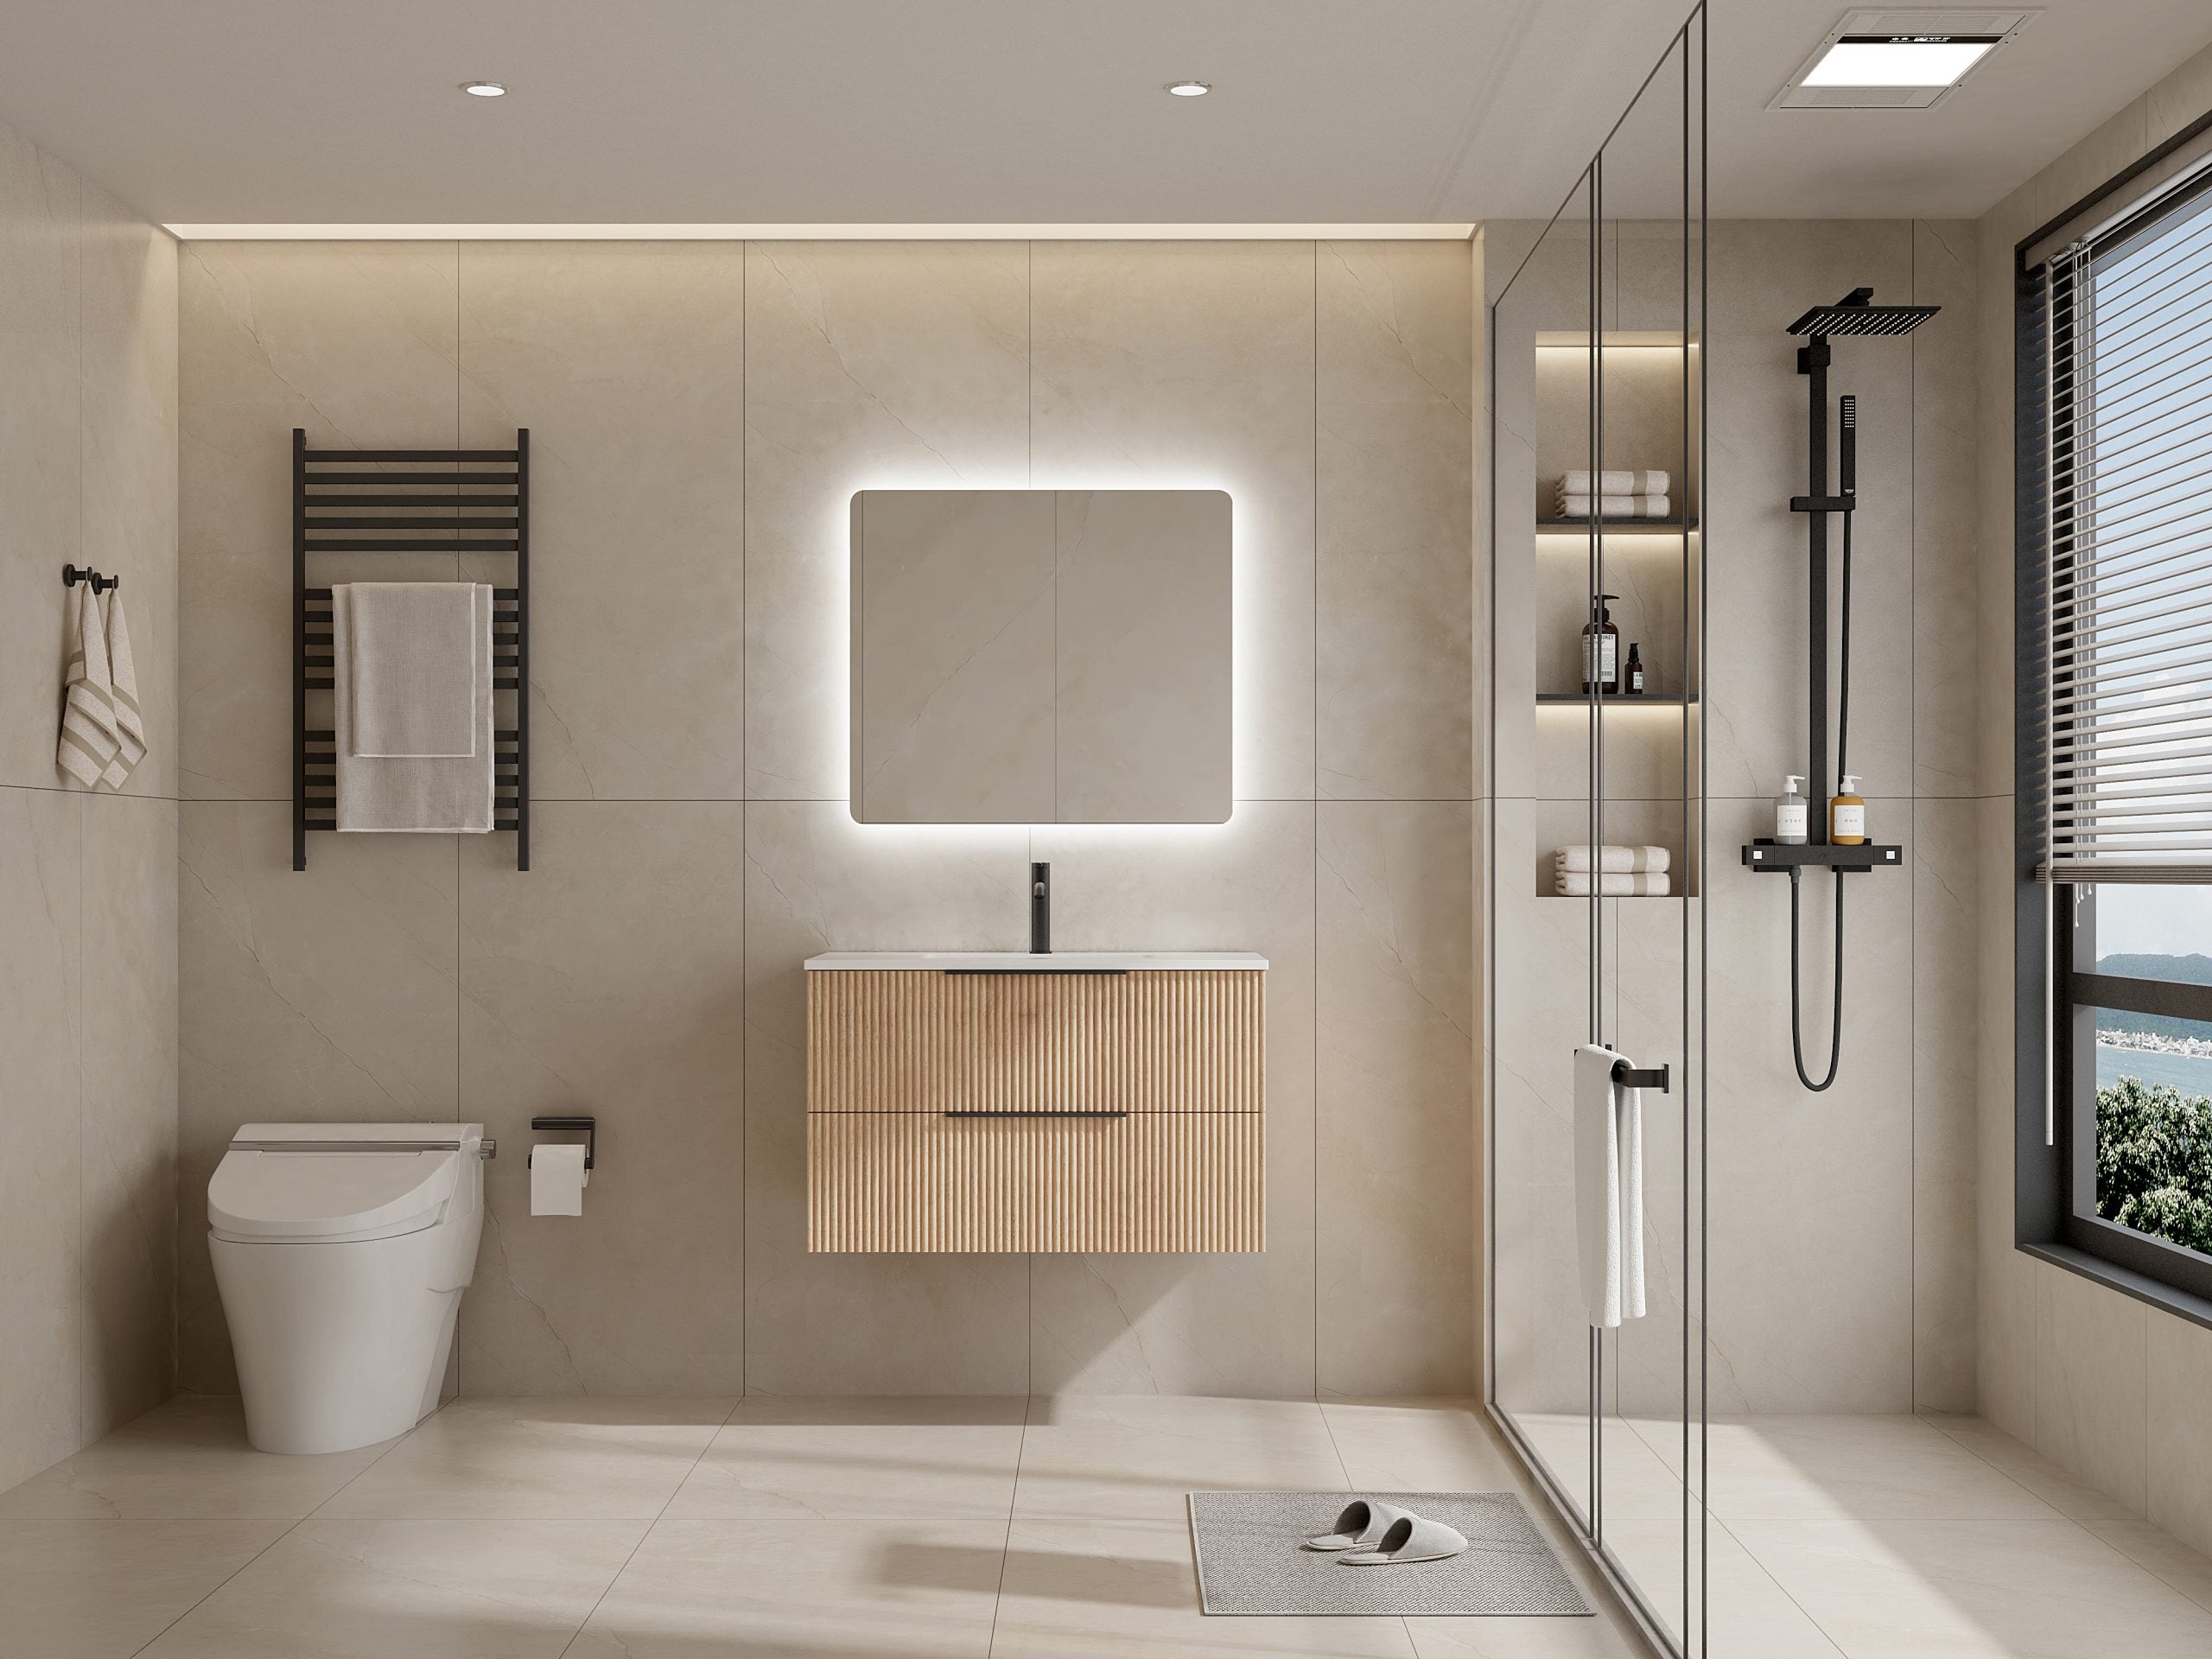 Ashwood 750 Wall Hung Timber Bathroom Vanity